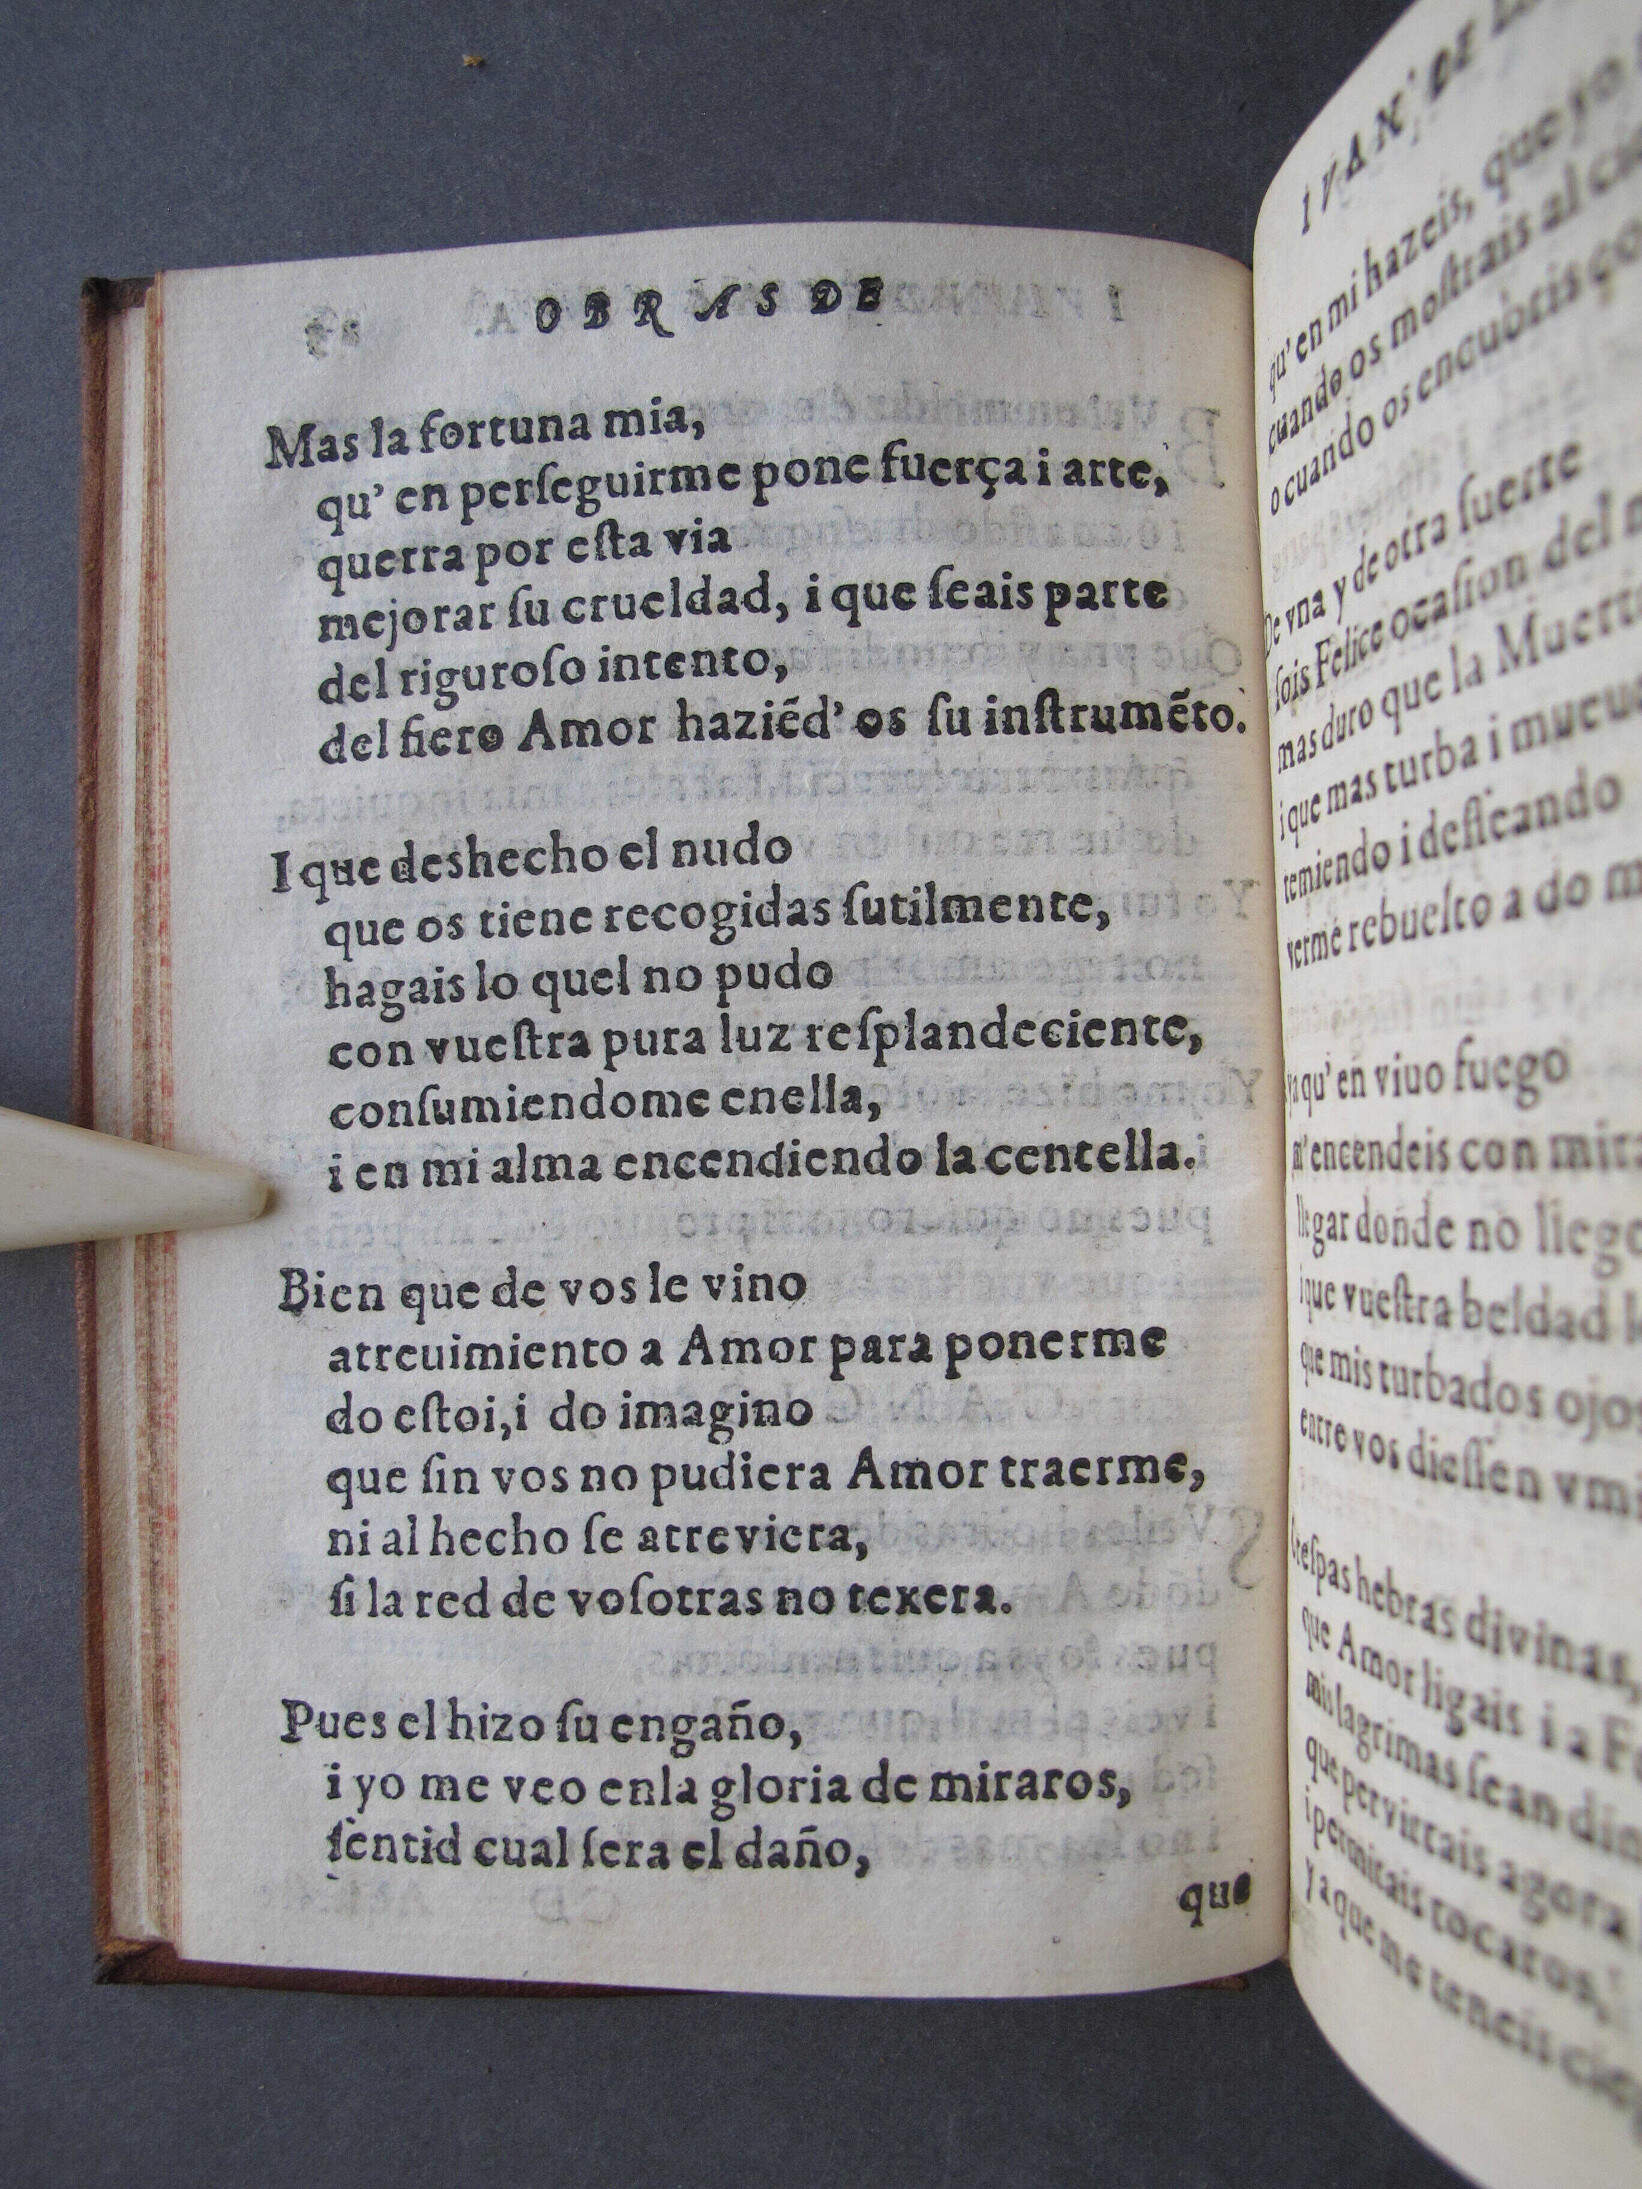 Folio D1 verso